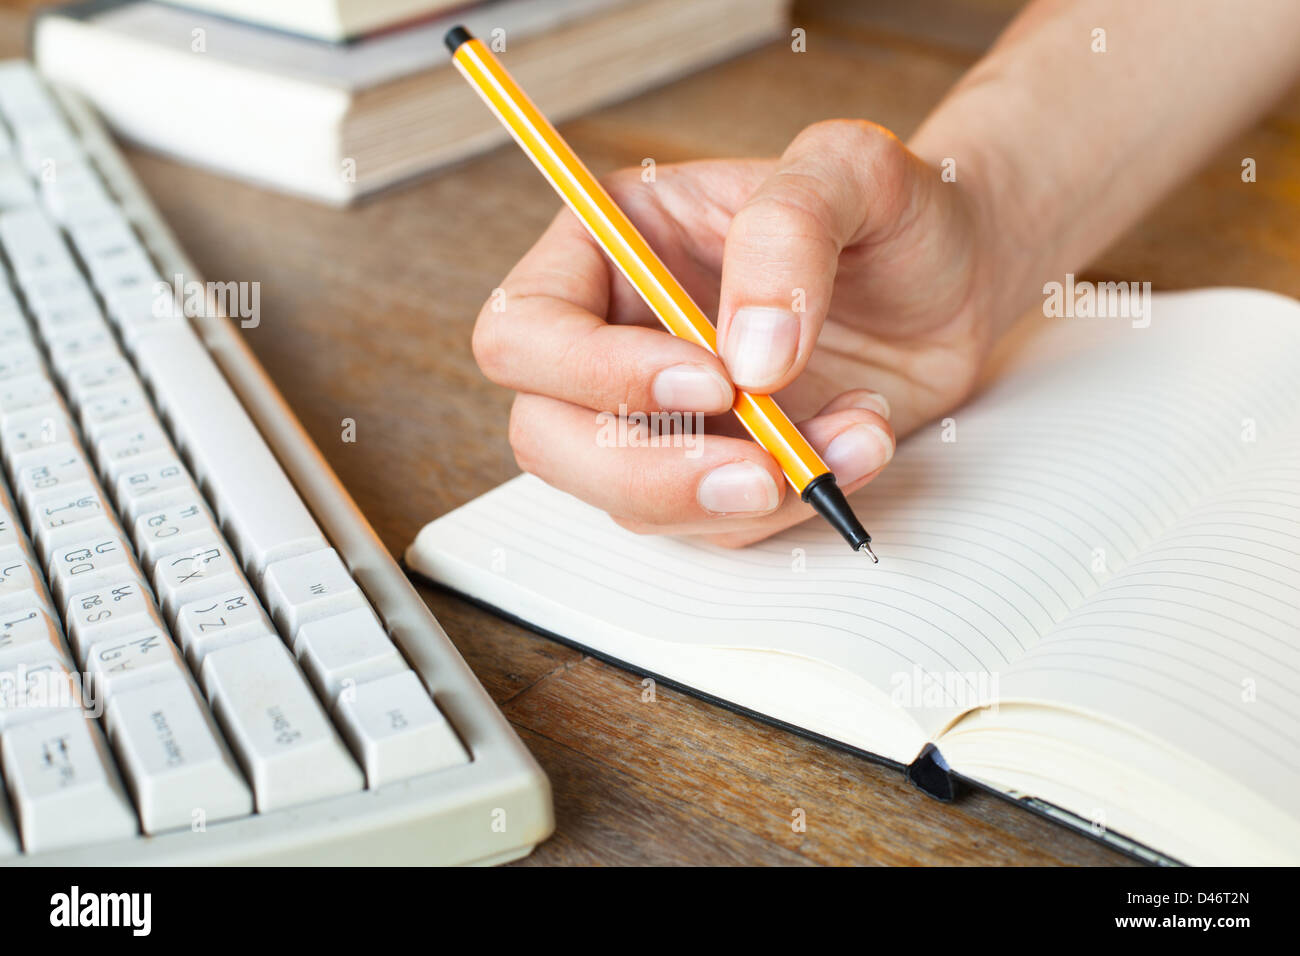 Junge Frau Hände schreibt einen Stift in einem Notebook, Computer-Tastatur und einen Stapel Bücher im Hintergrund Stockfoto